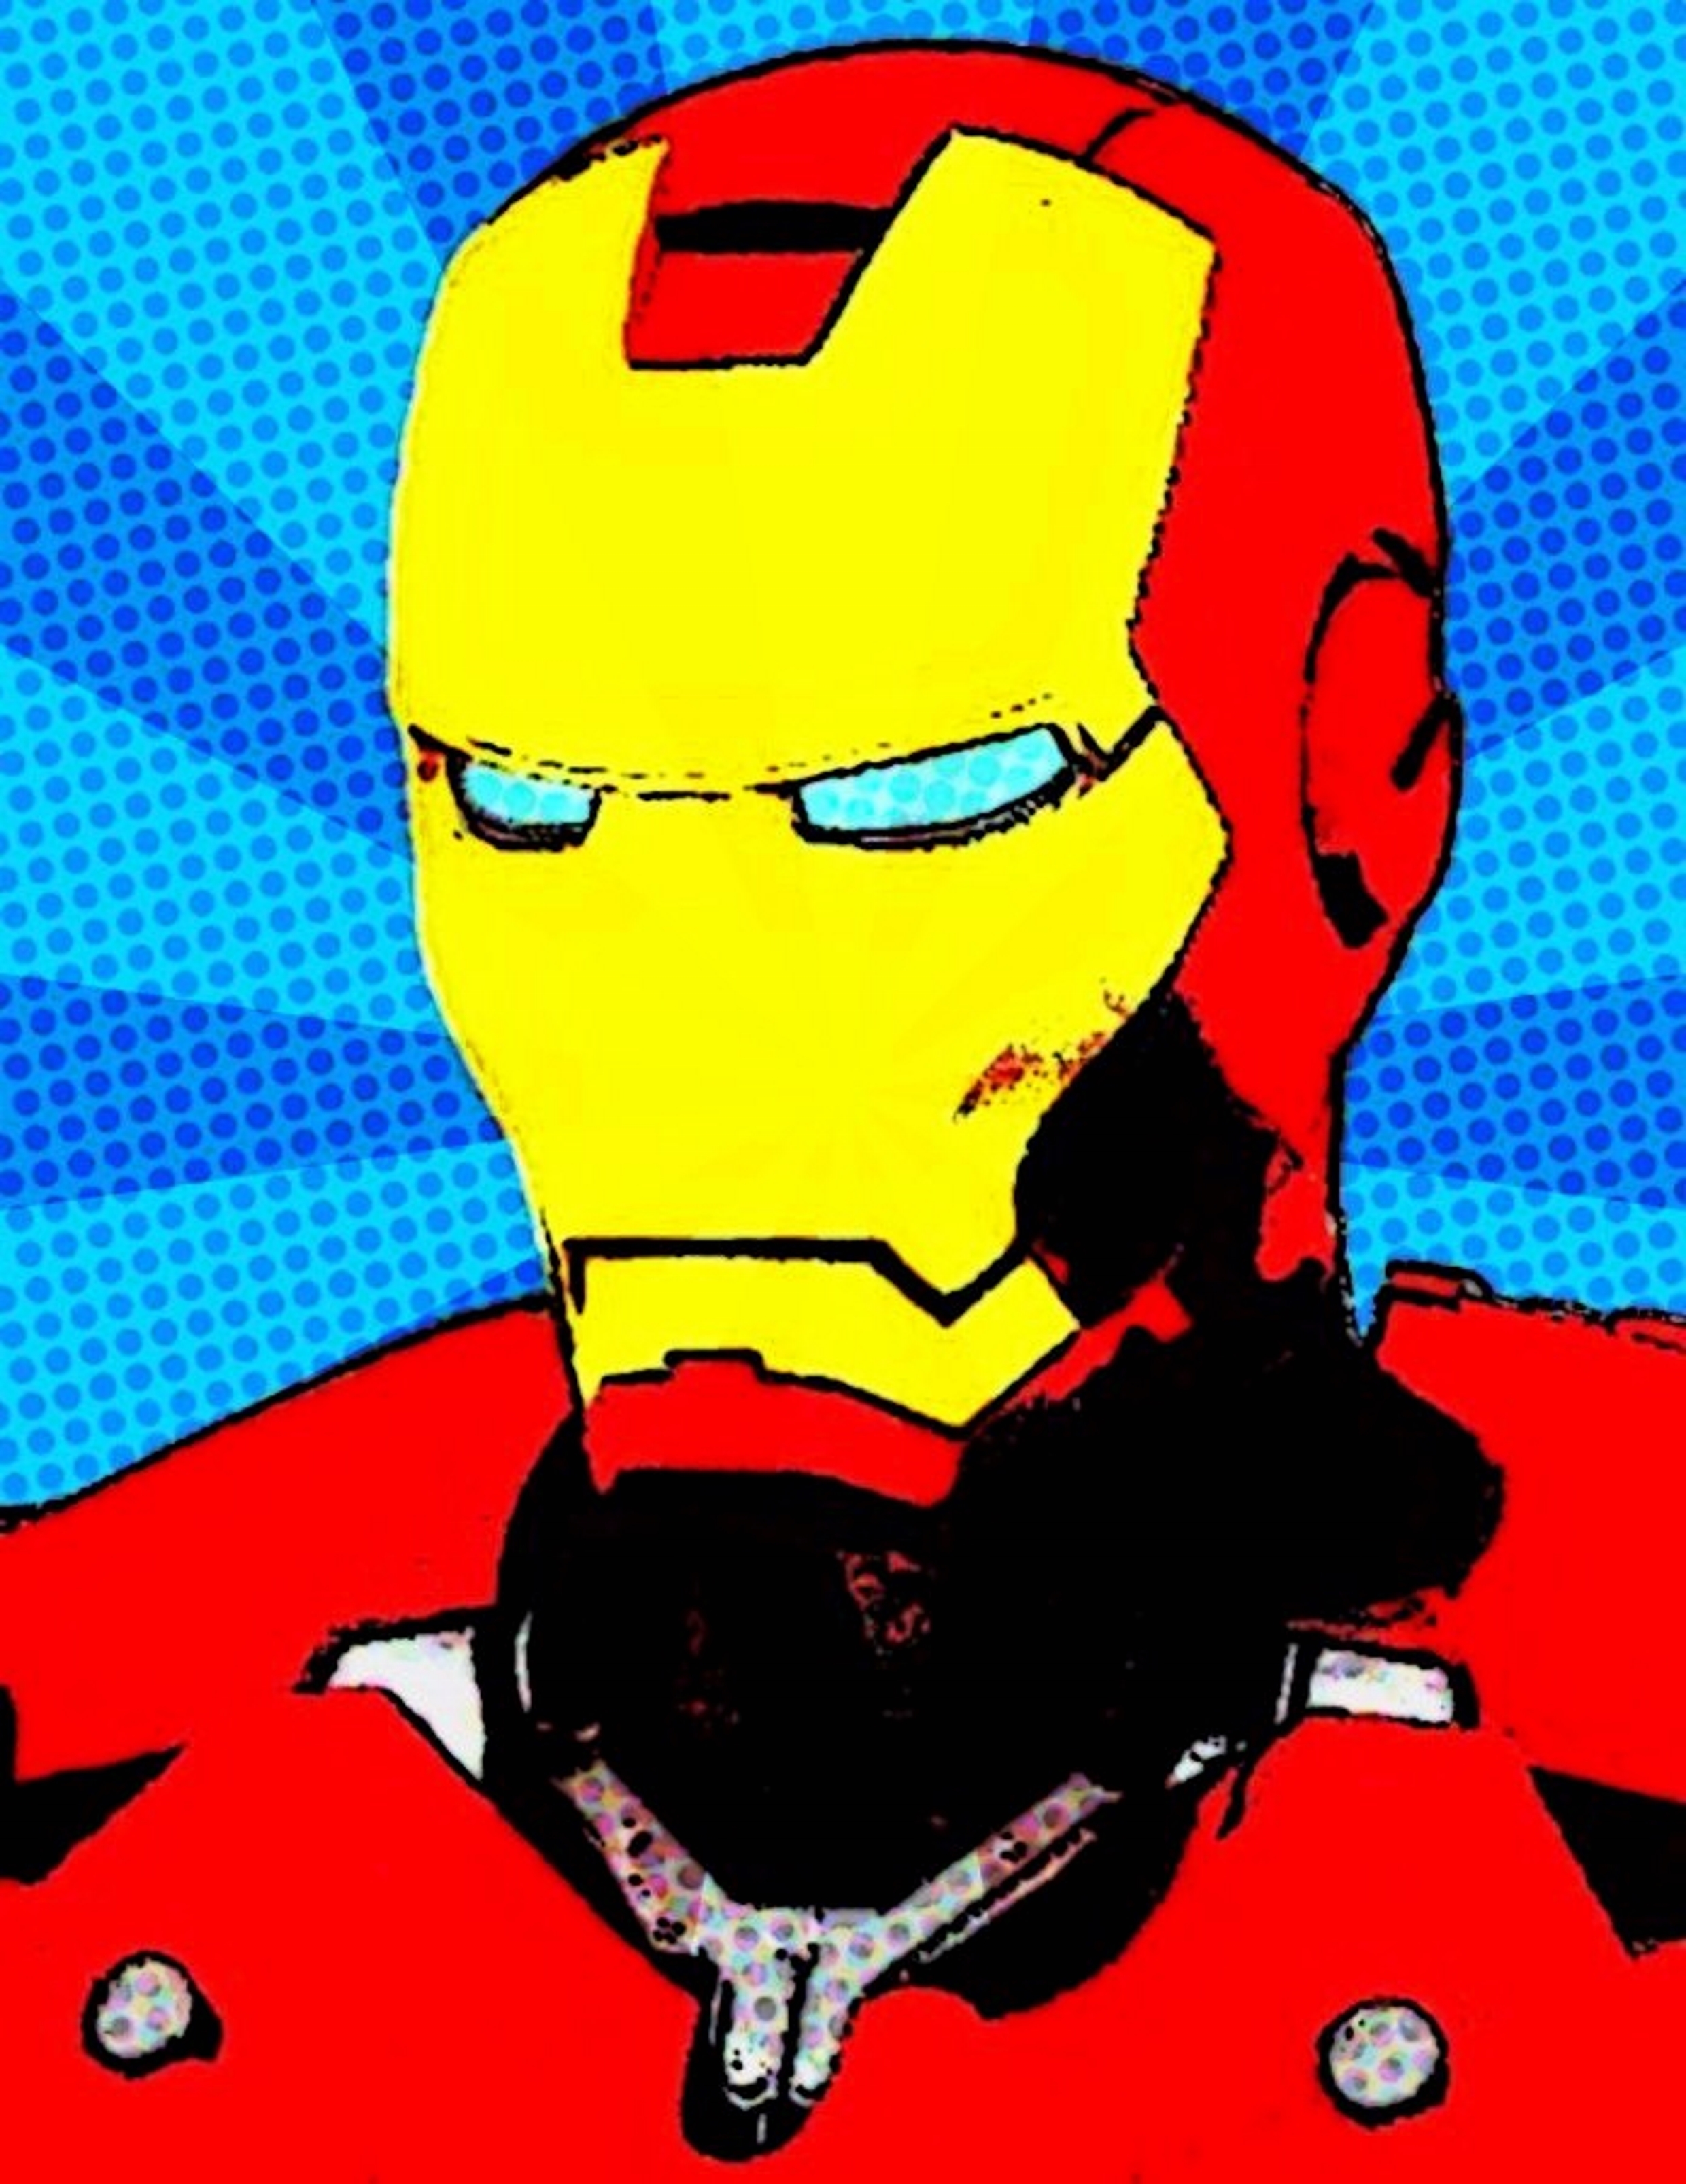 estoy sediento juego Infidelidad Iron Man comic pop art by TheGreatDevin on DeviantArt